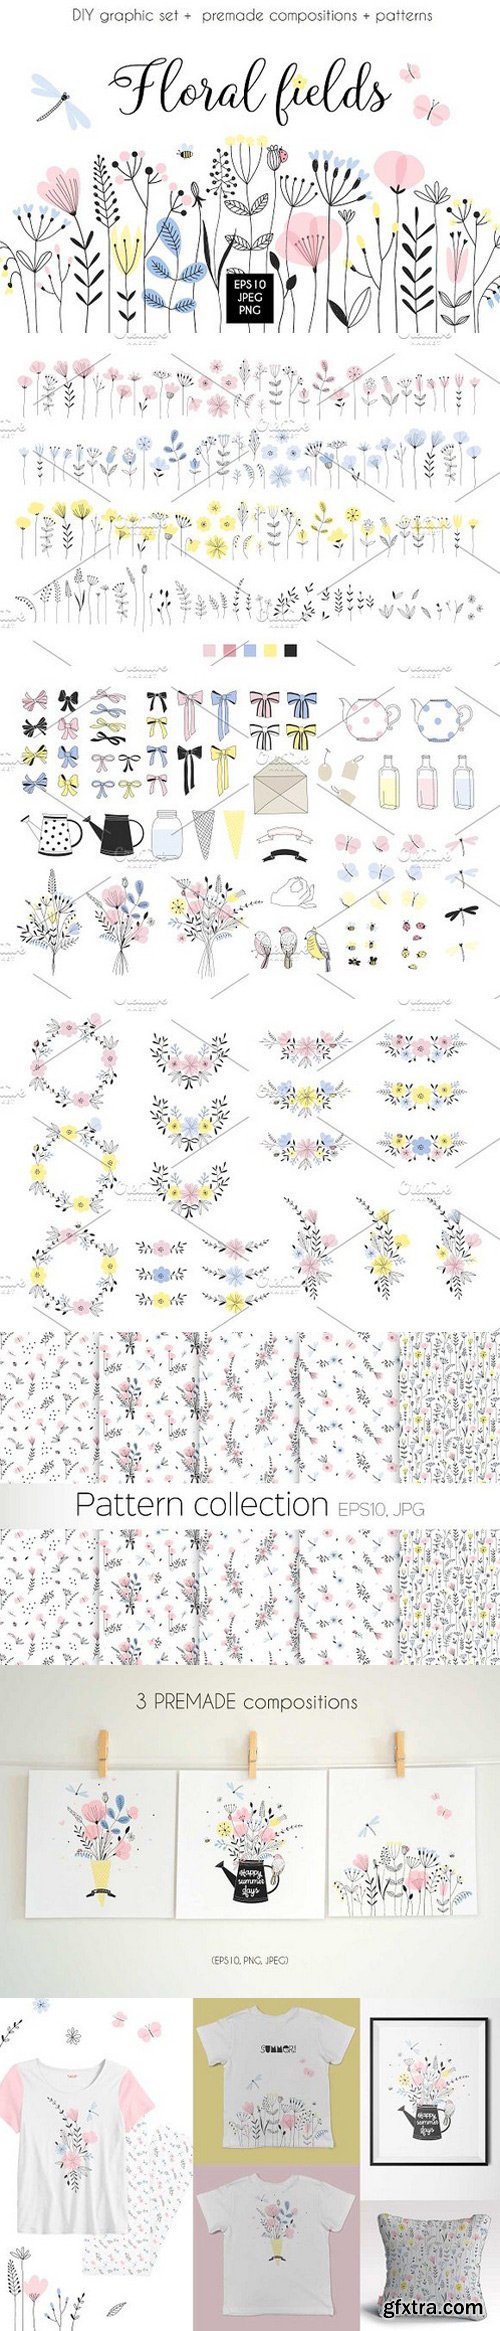 CM - Graphic floral bundle 1604762